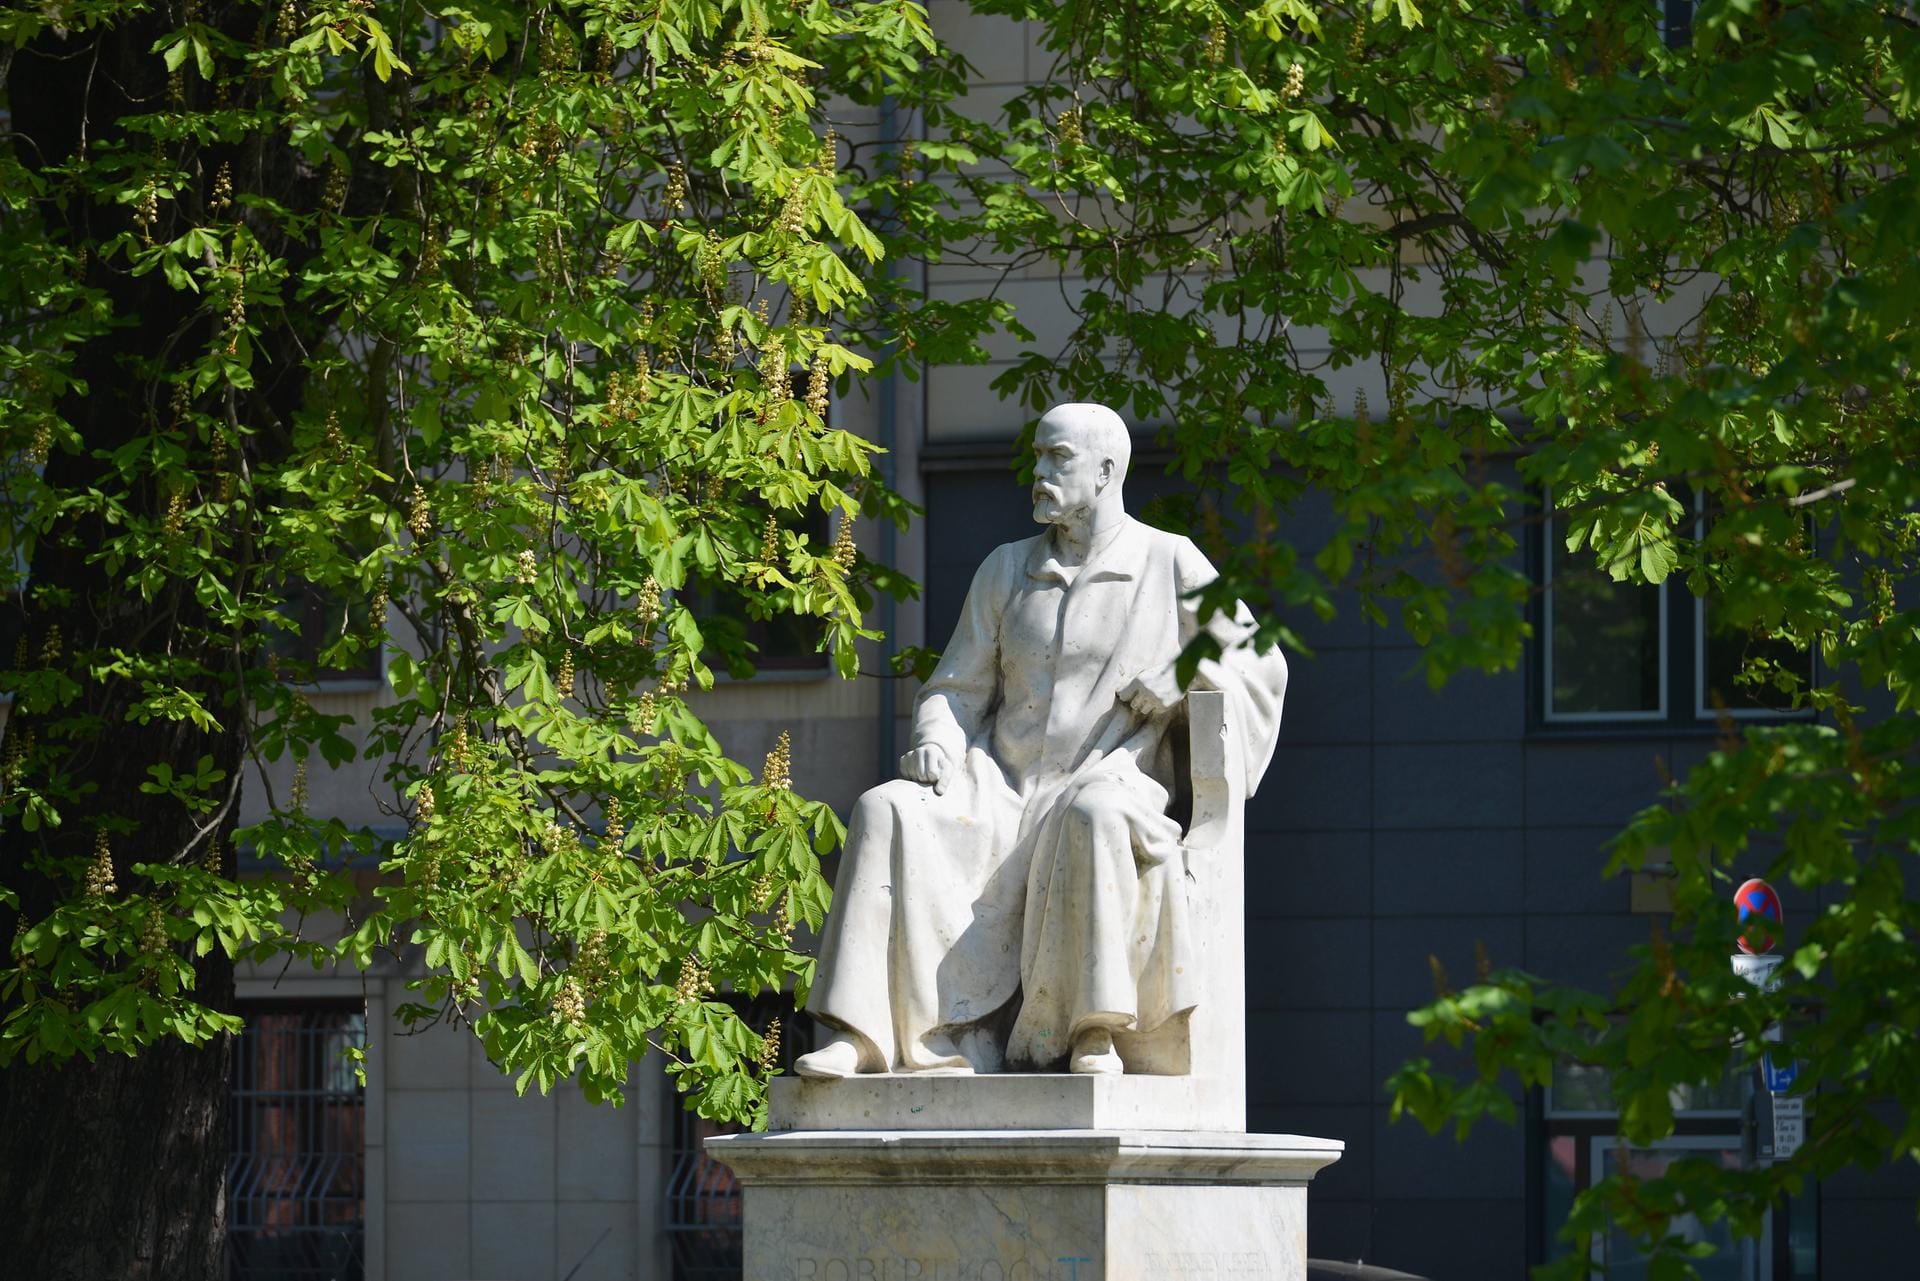 Überlebensgroßes Denkmal von Robert Koch in Berlin-Mitte: Der spätere Nobelpreisträger der Medizin soll in Afrika Ende des 19. Jahrhunderts umstrittene Menschenversuche durchgeführt haben.